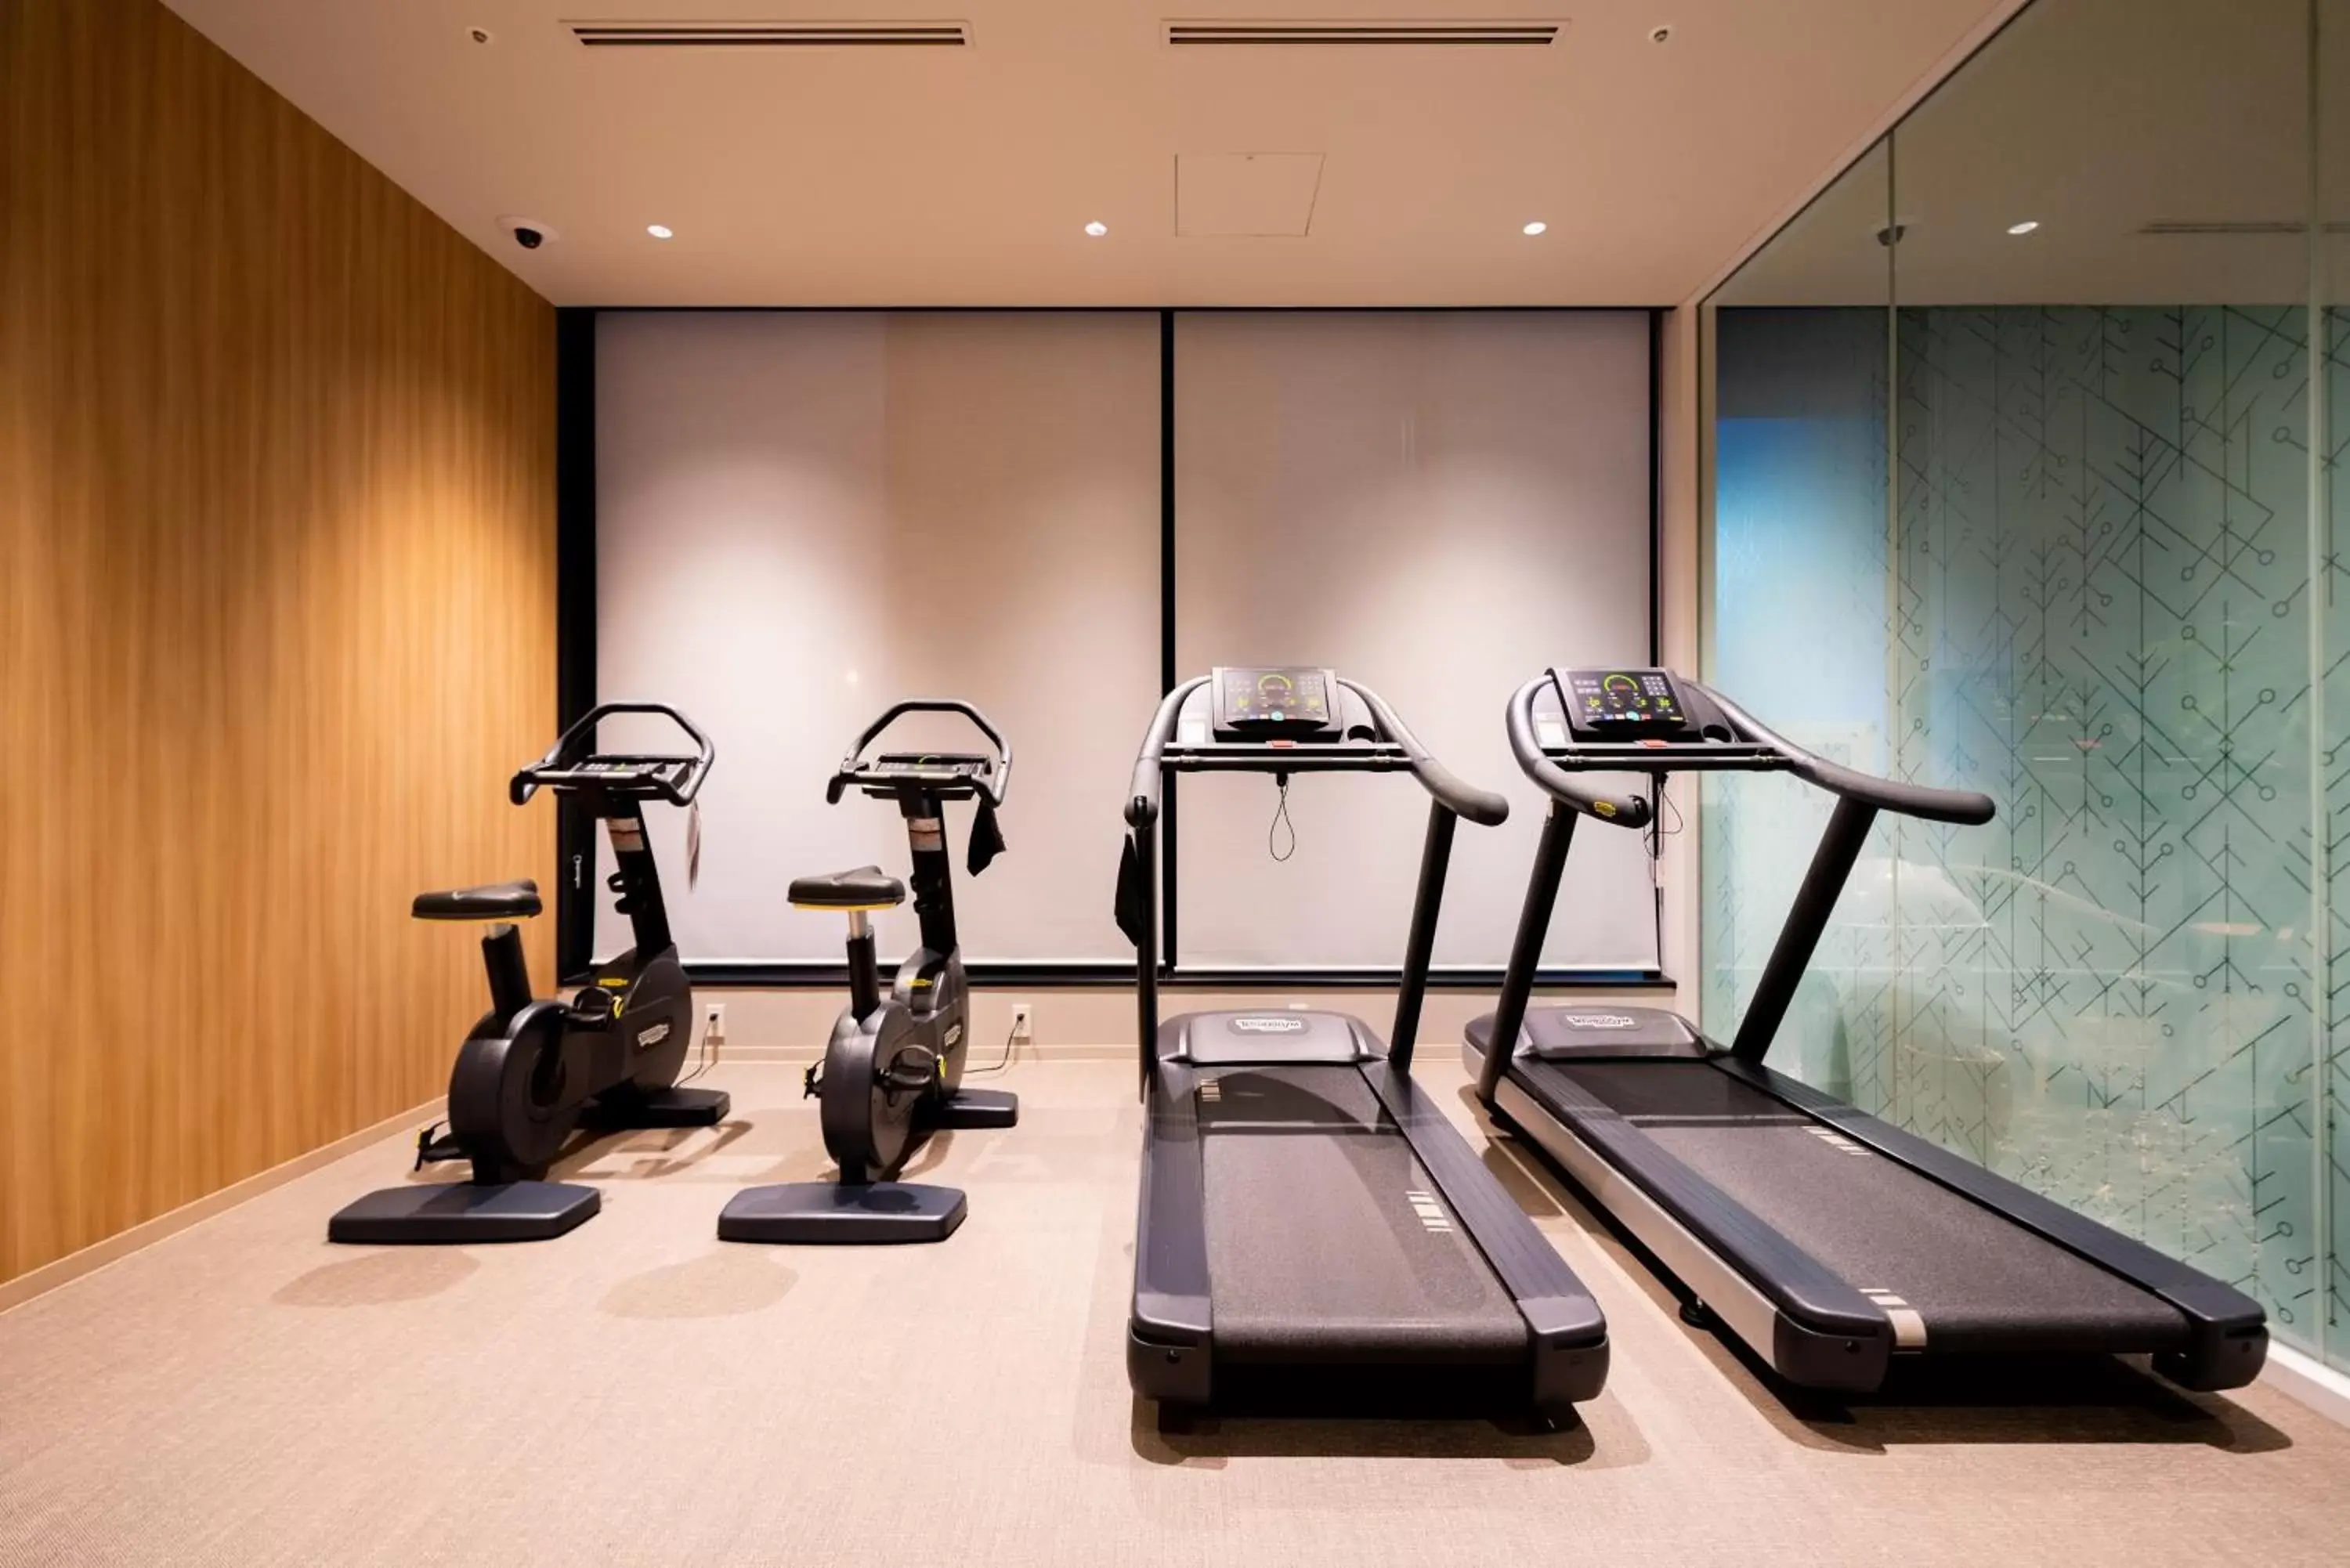 Fitness centre/facilities, Fitness Center/Facilities in Keio Prelia Hotel Sapporo